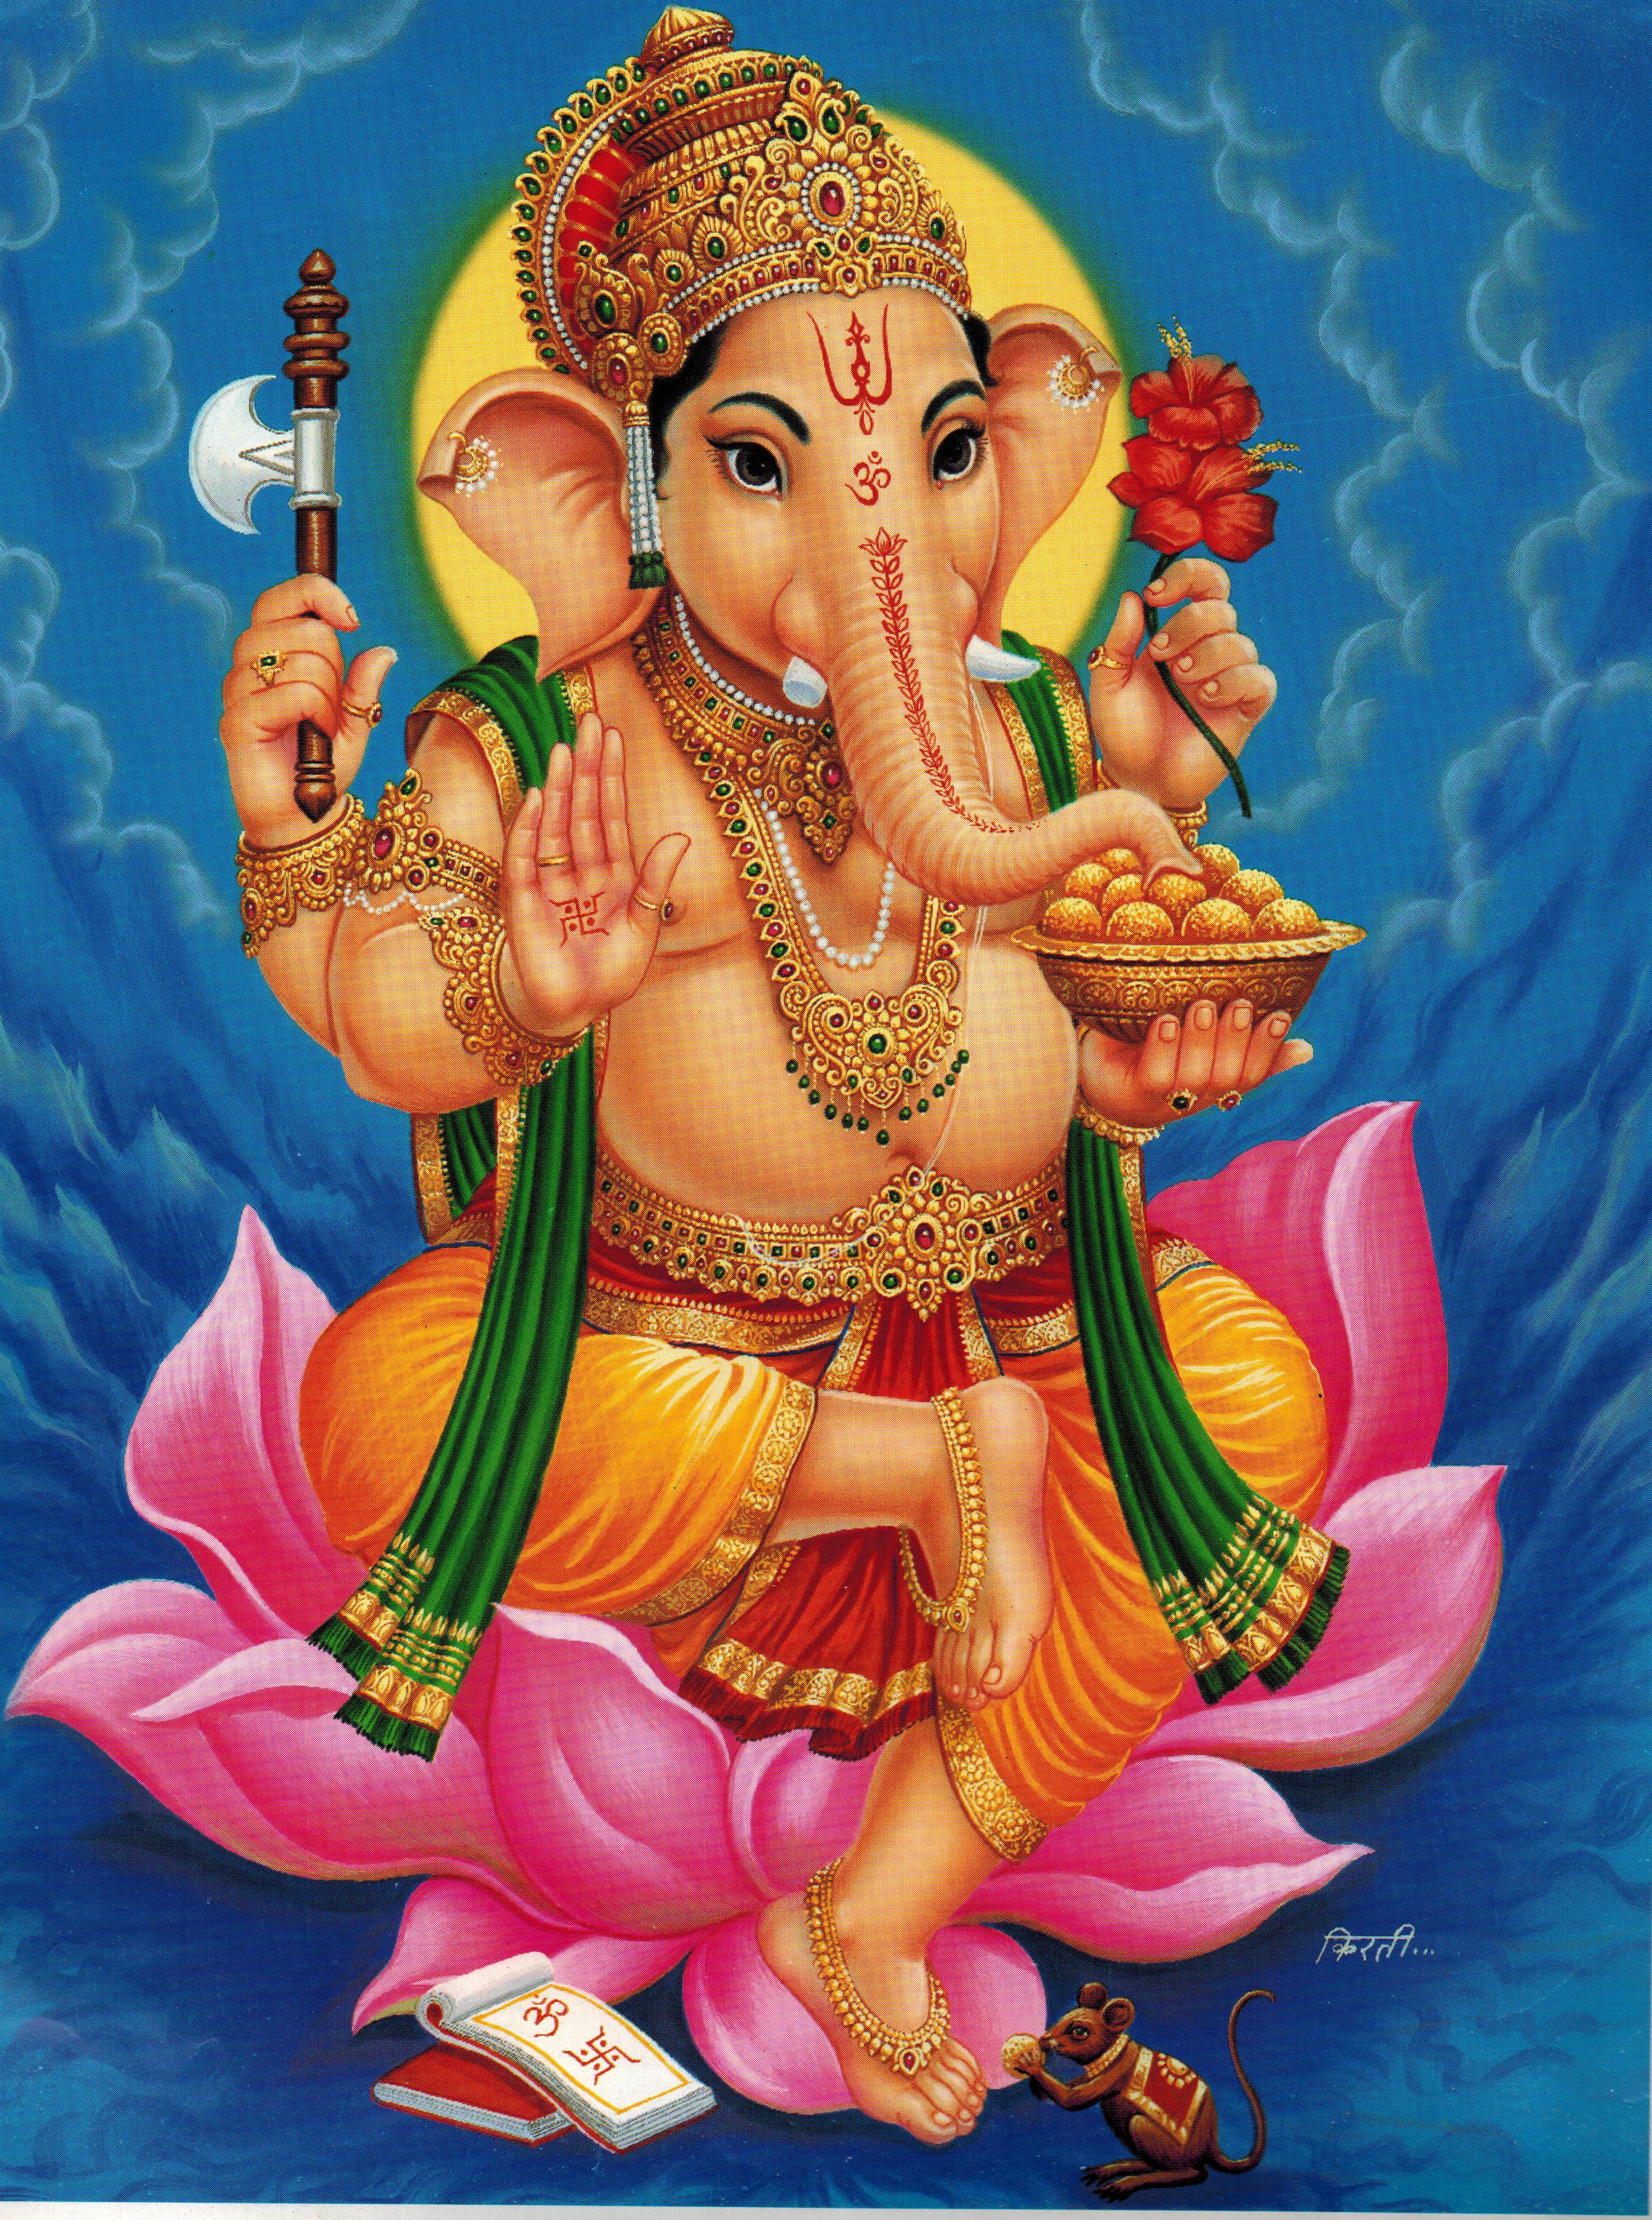 Hình ảnh Ganesh miễn phí 3200x4300, Tải xuống Clip nghệ thuật miễn phí, Clip nghệ thuật miễn phí